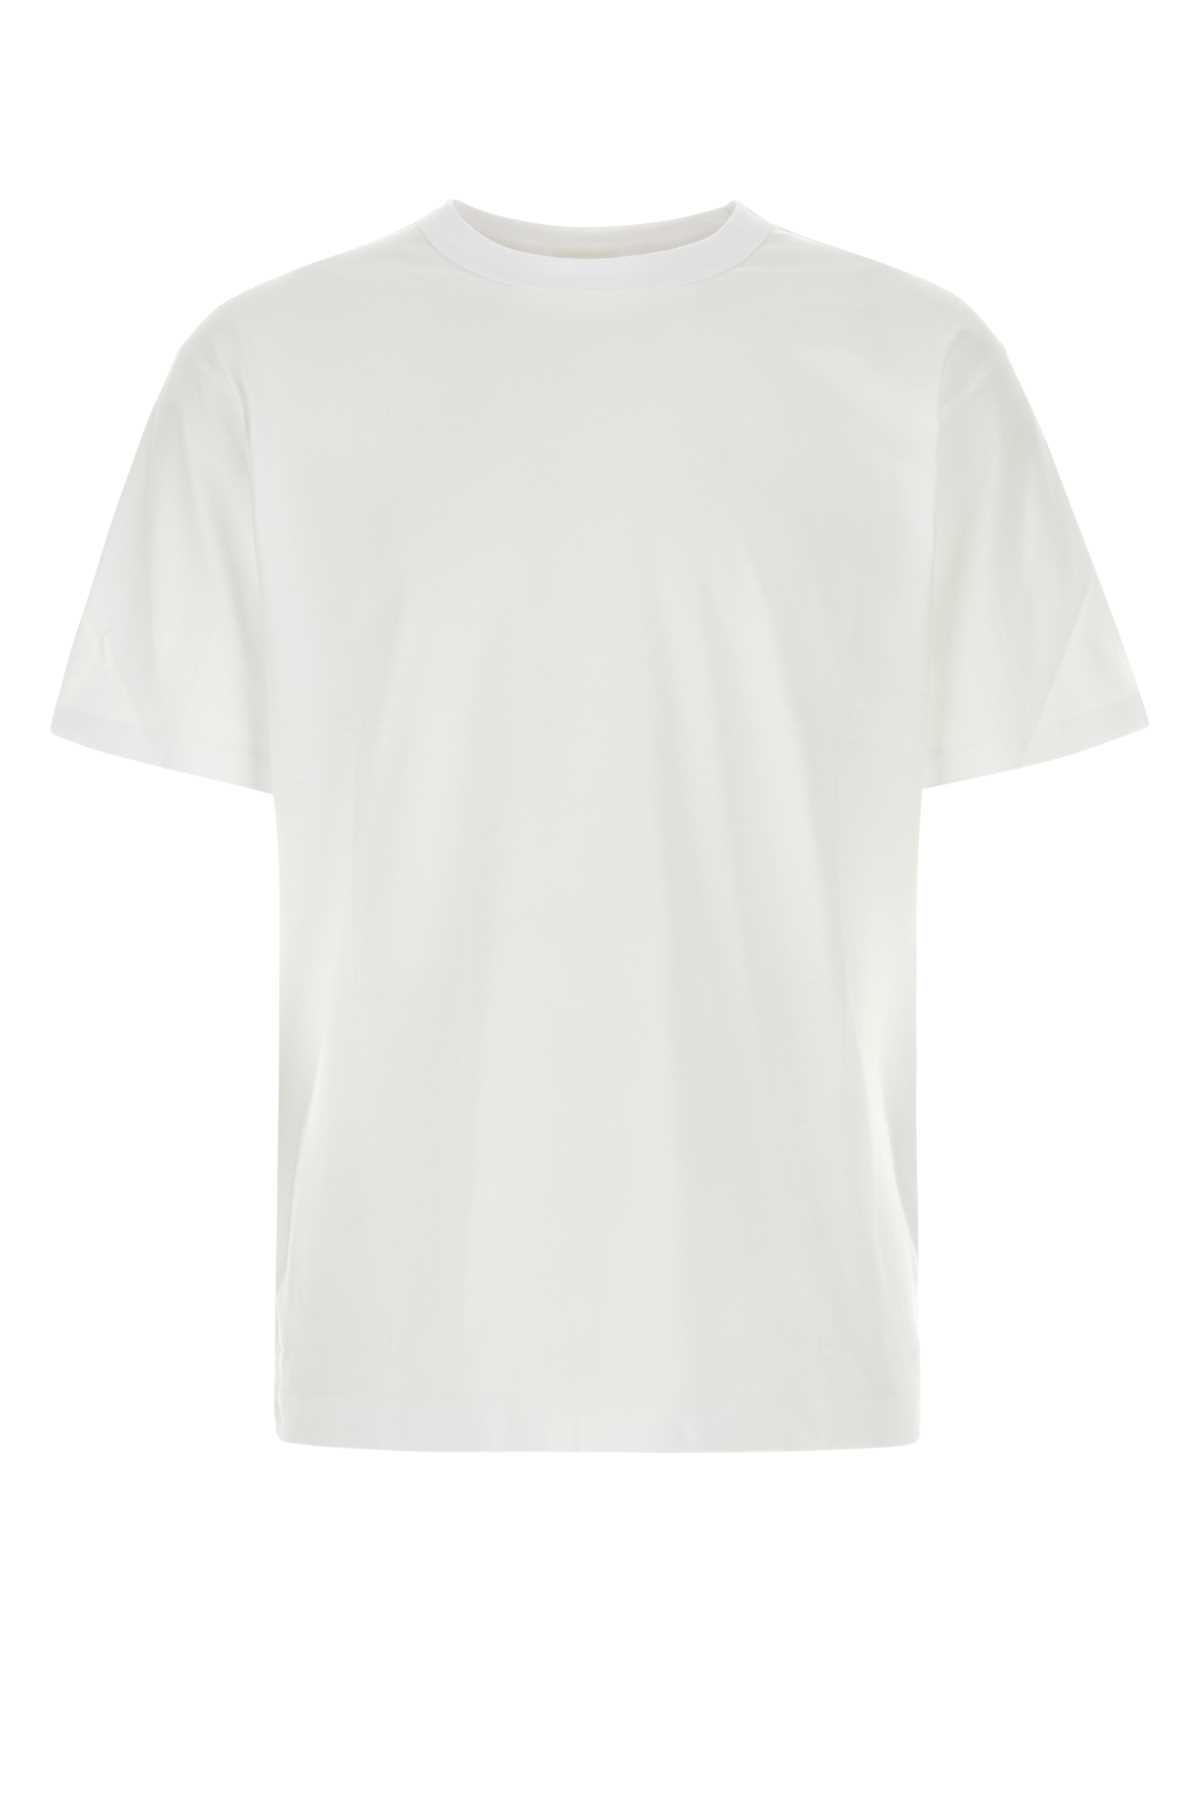 White Cotton Heer T-shirt